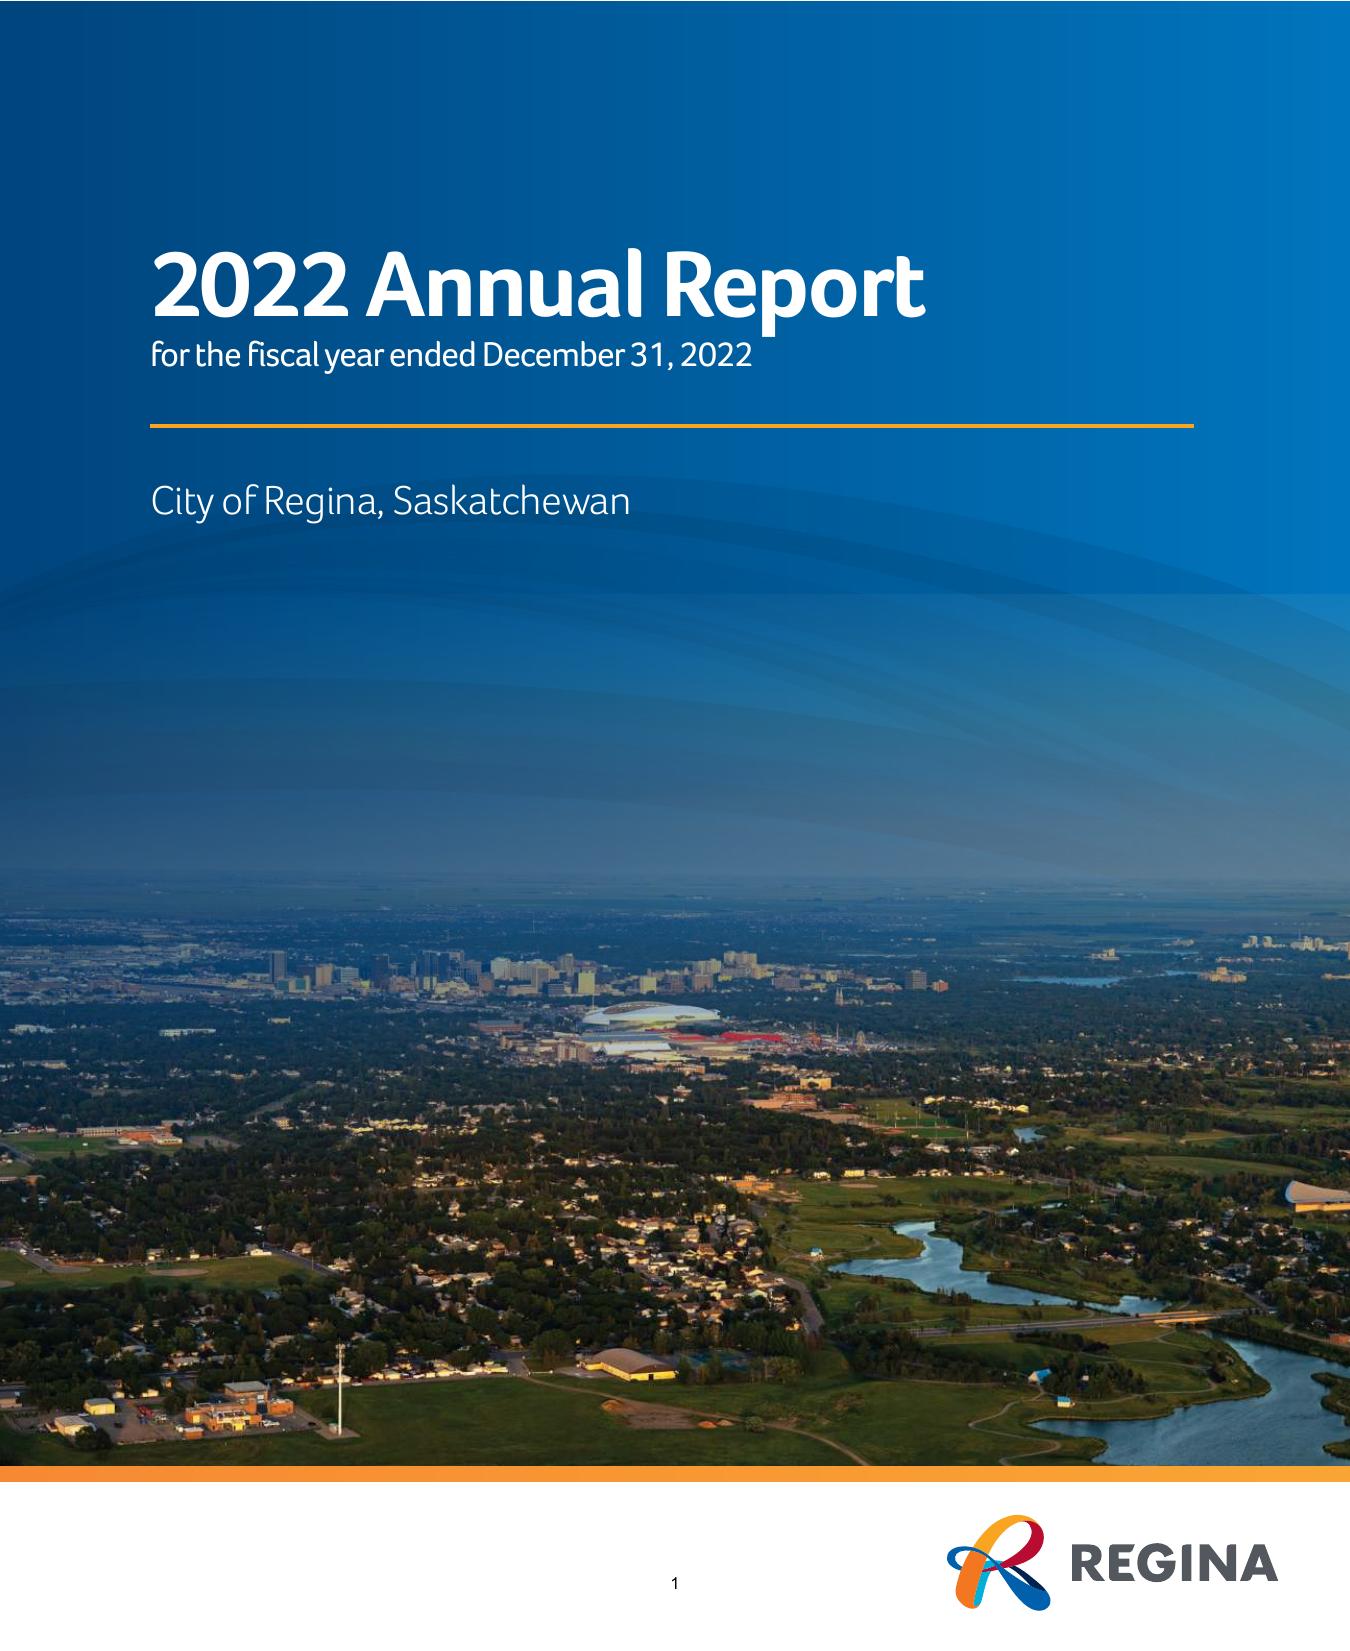 REGINA 2022 Annual Report